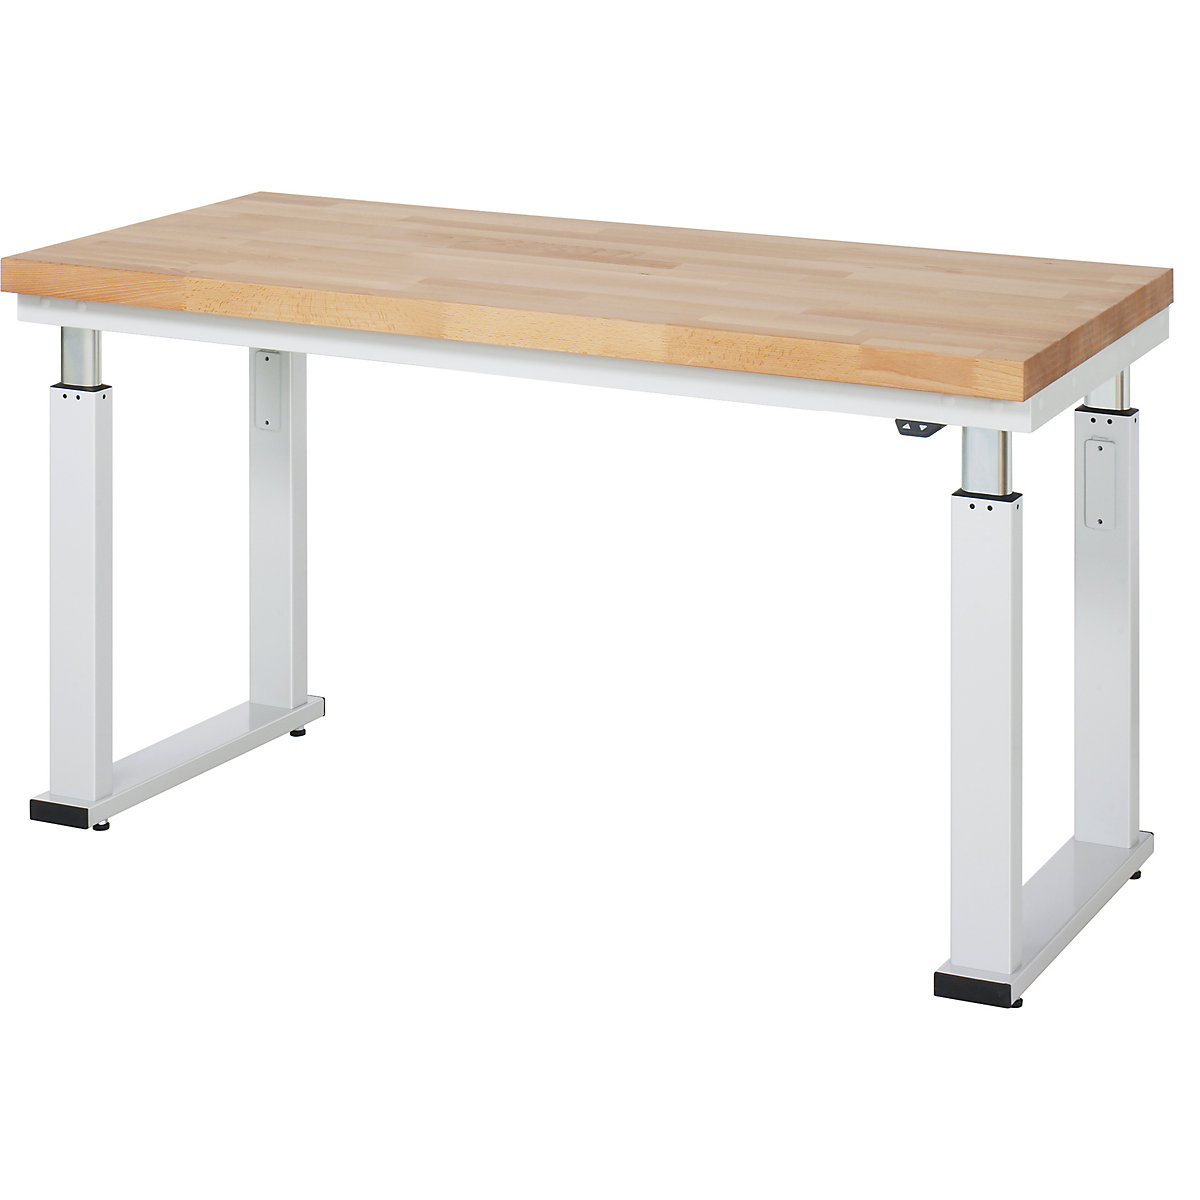 Psací stůl s elektrickým přestavováním výšky – RAU, bukový masiv, nosnost 600 kg, š x h 1500 x 700 mm-8